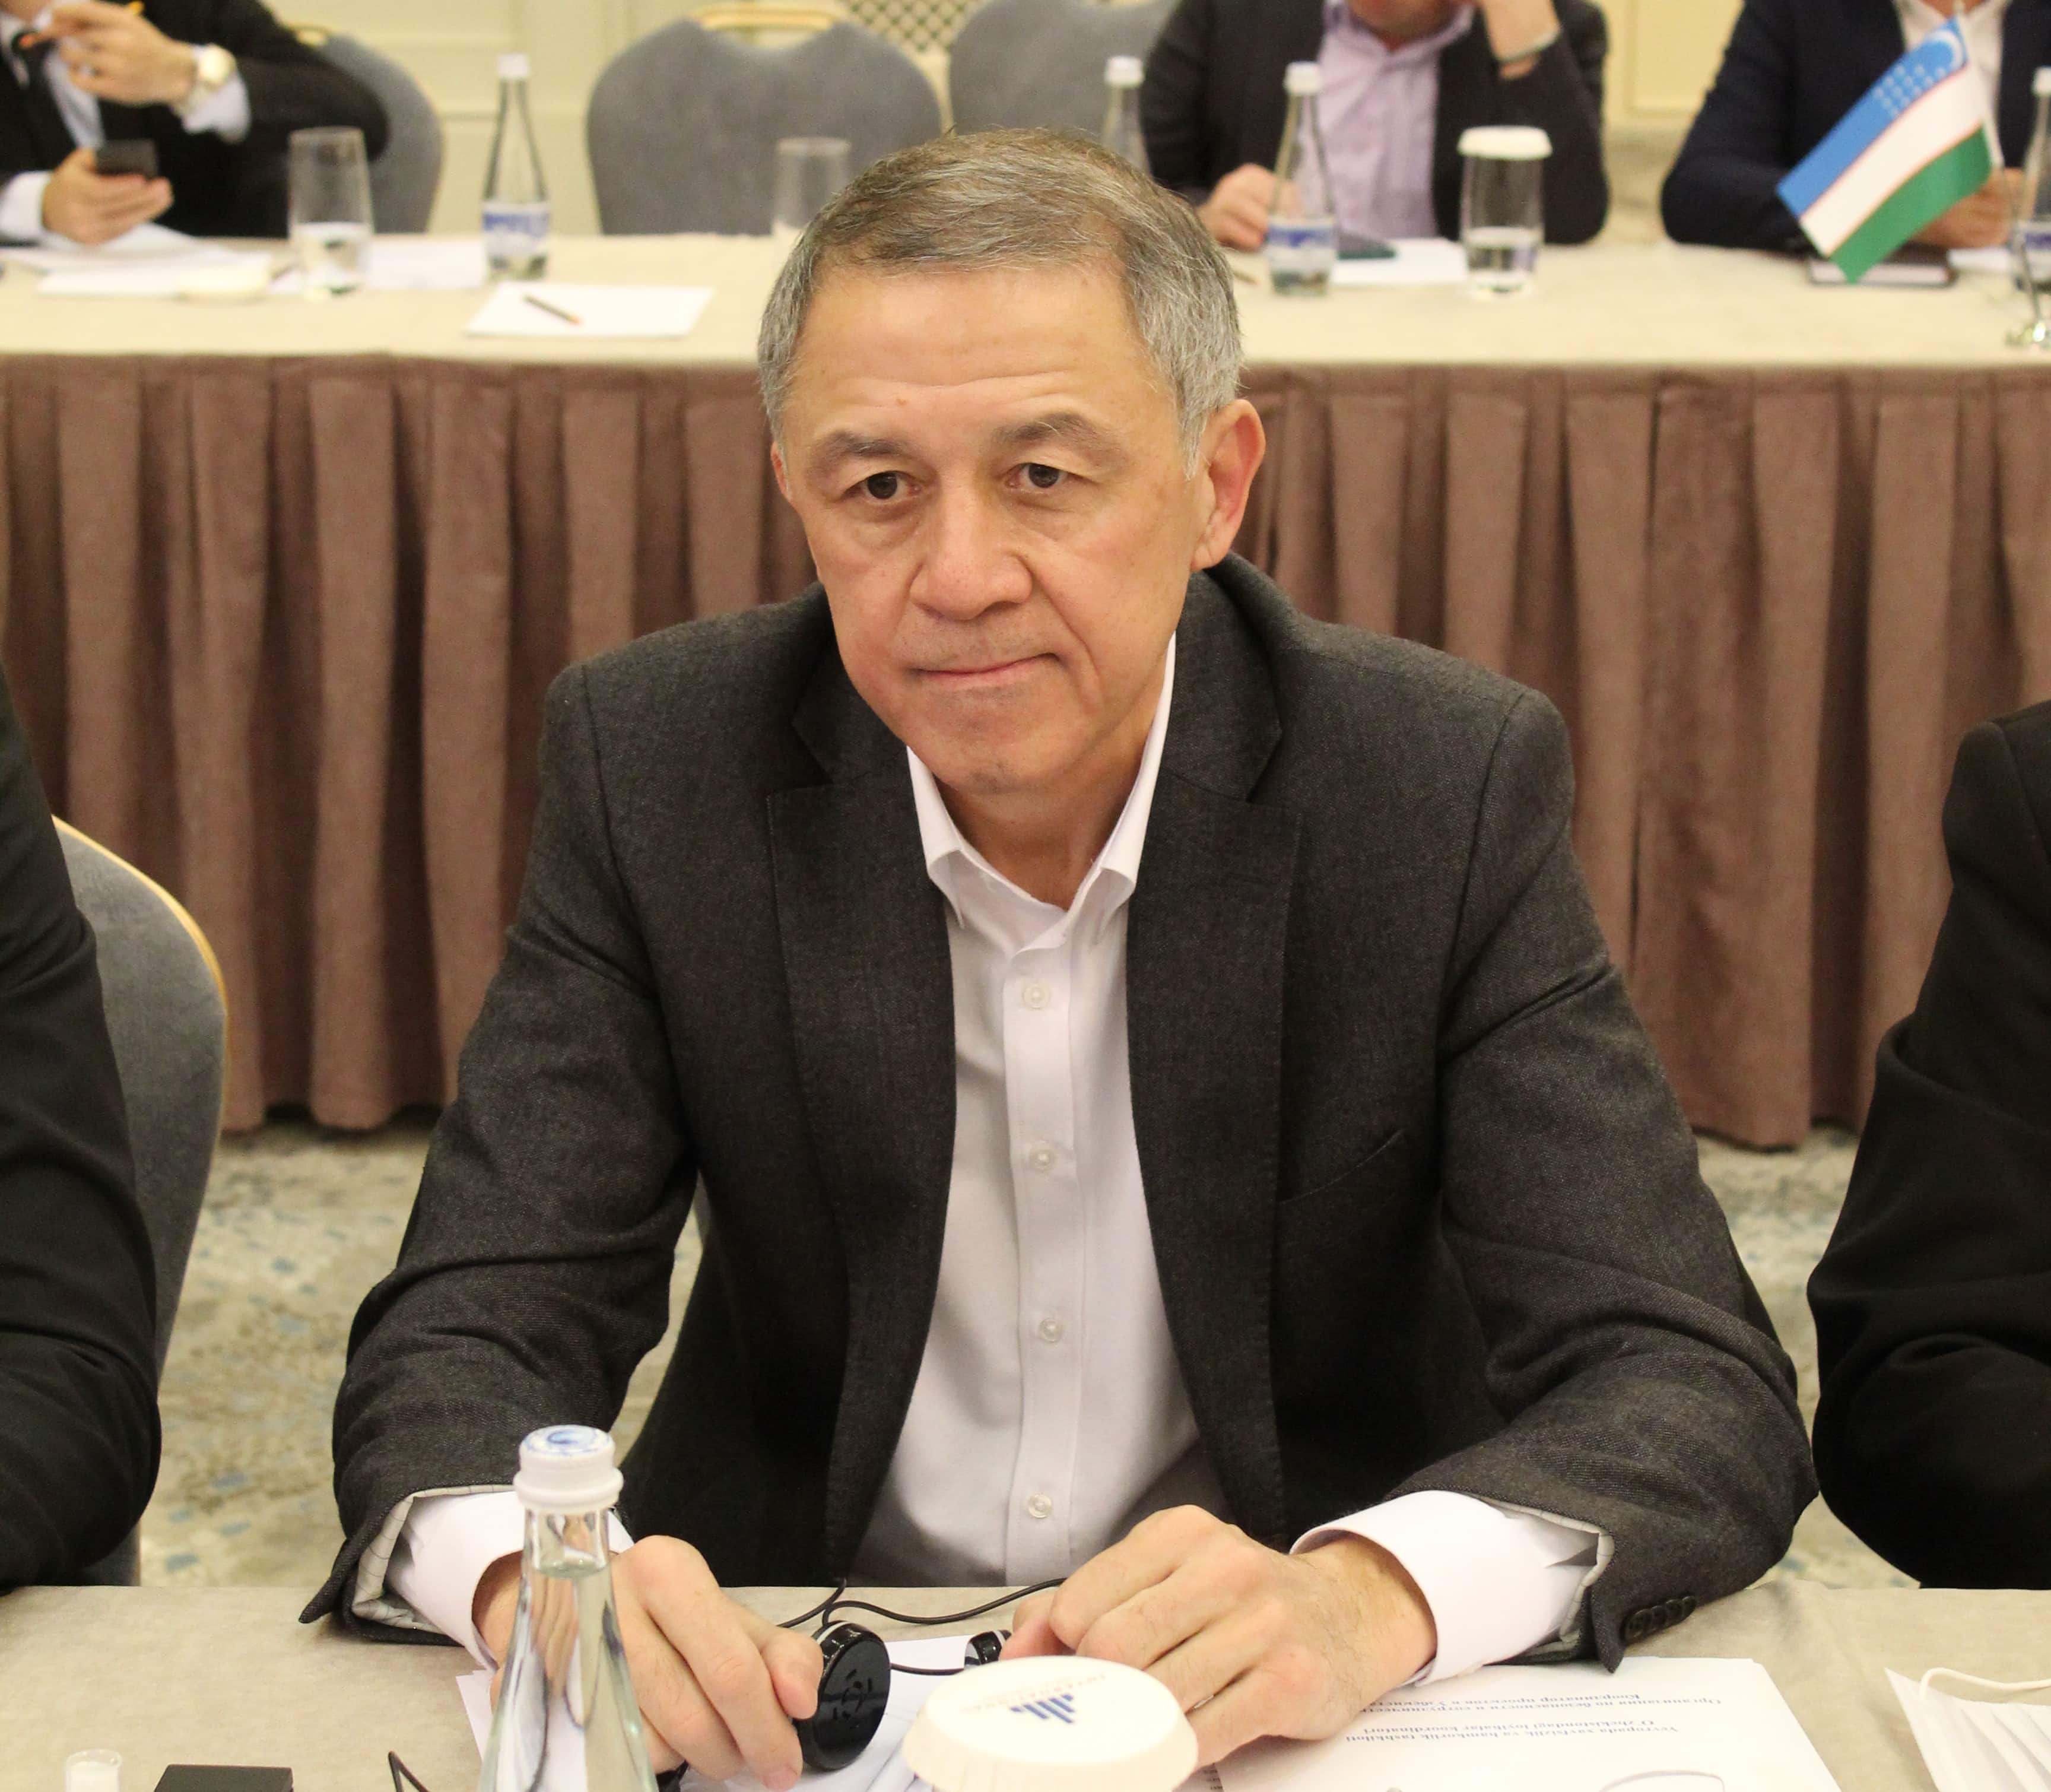 Региональный представитель Омбудсмана в Ферганской области разрешает вопросы, изложенные в обращениях, поступивших во время выездного приёма